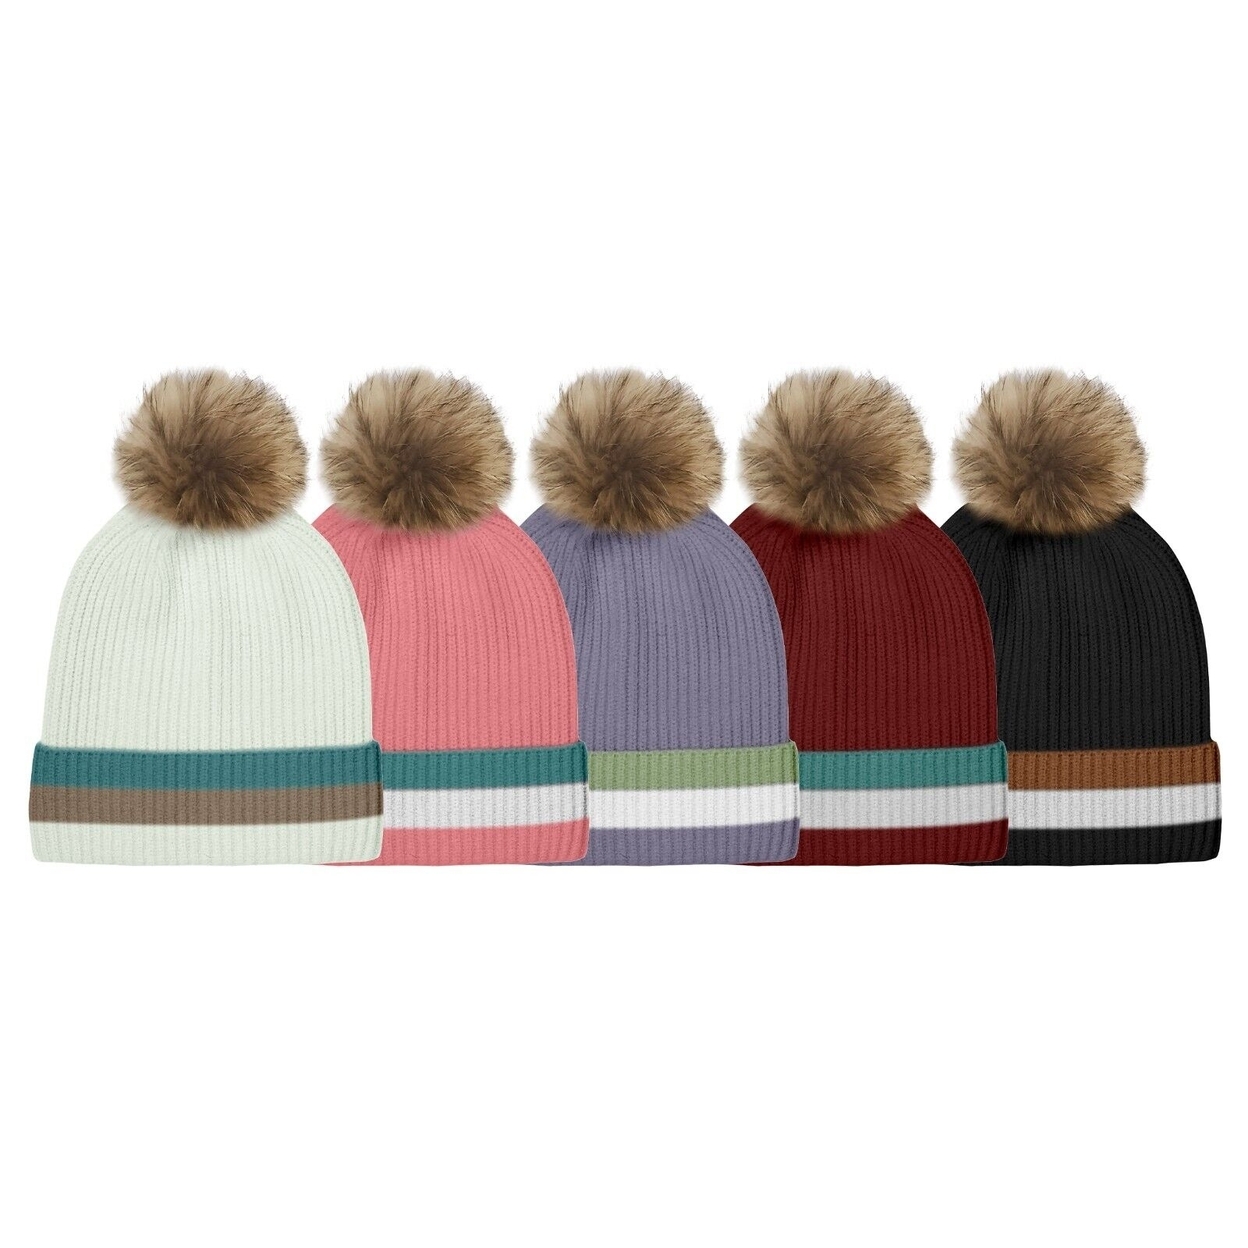 3-Pack: Women's Ultra-Soft Winter Warm Knit Feel Pom Pom Hat W/ Faux Fur Lining - Solid